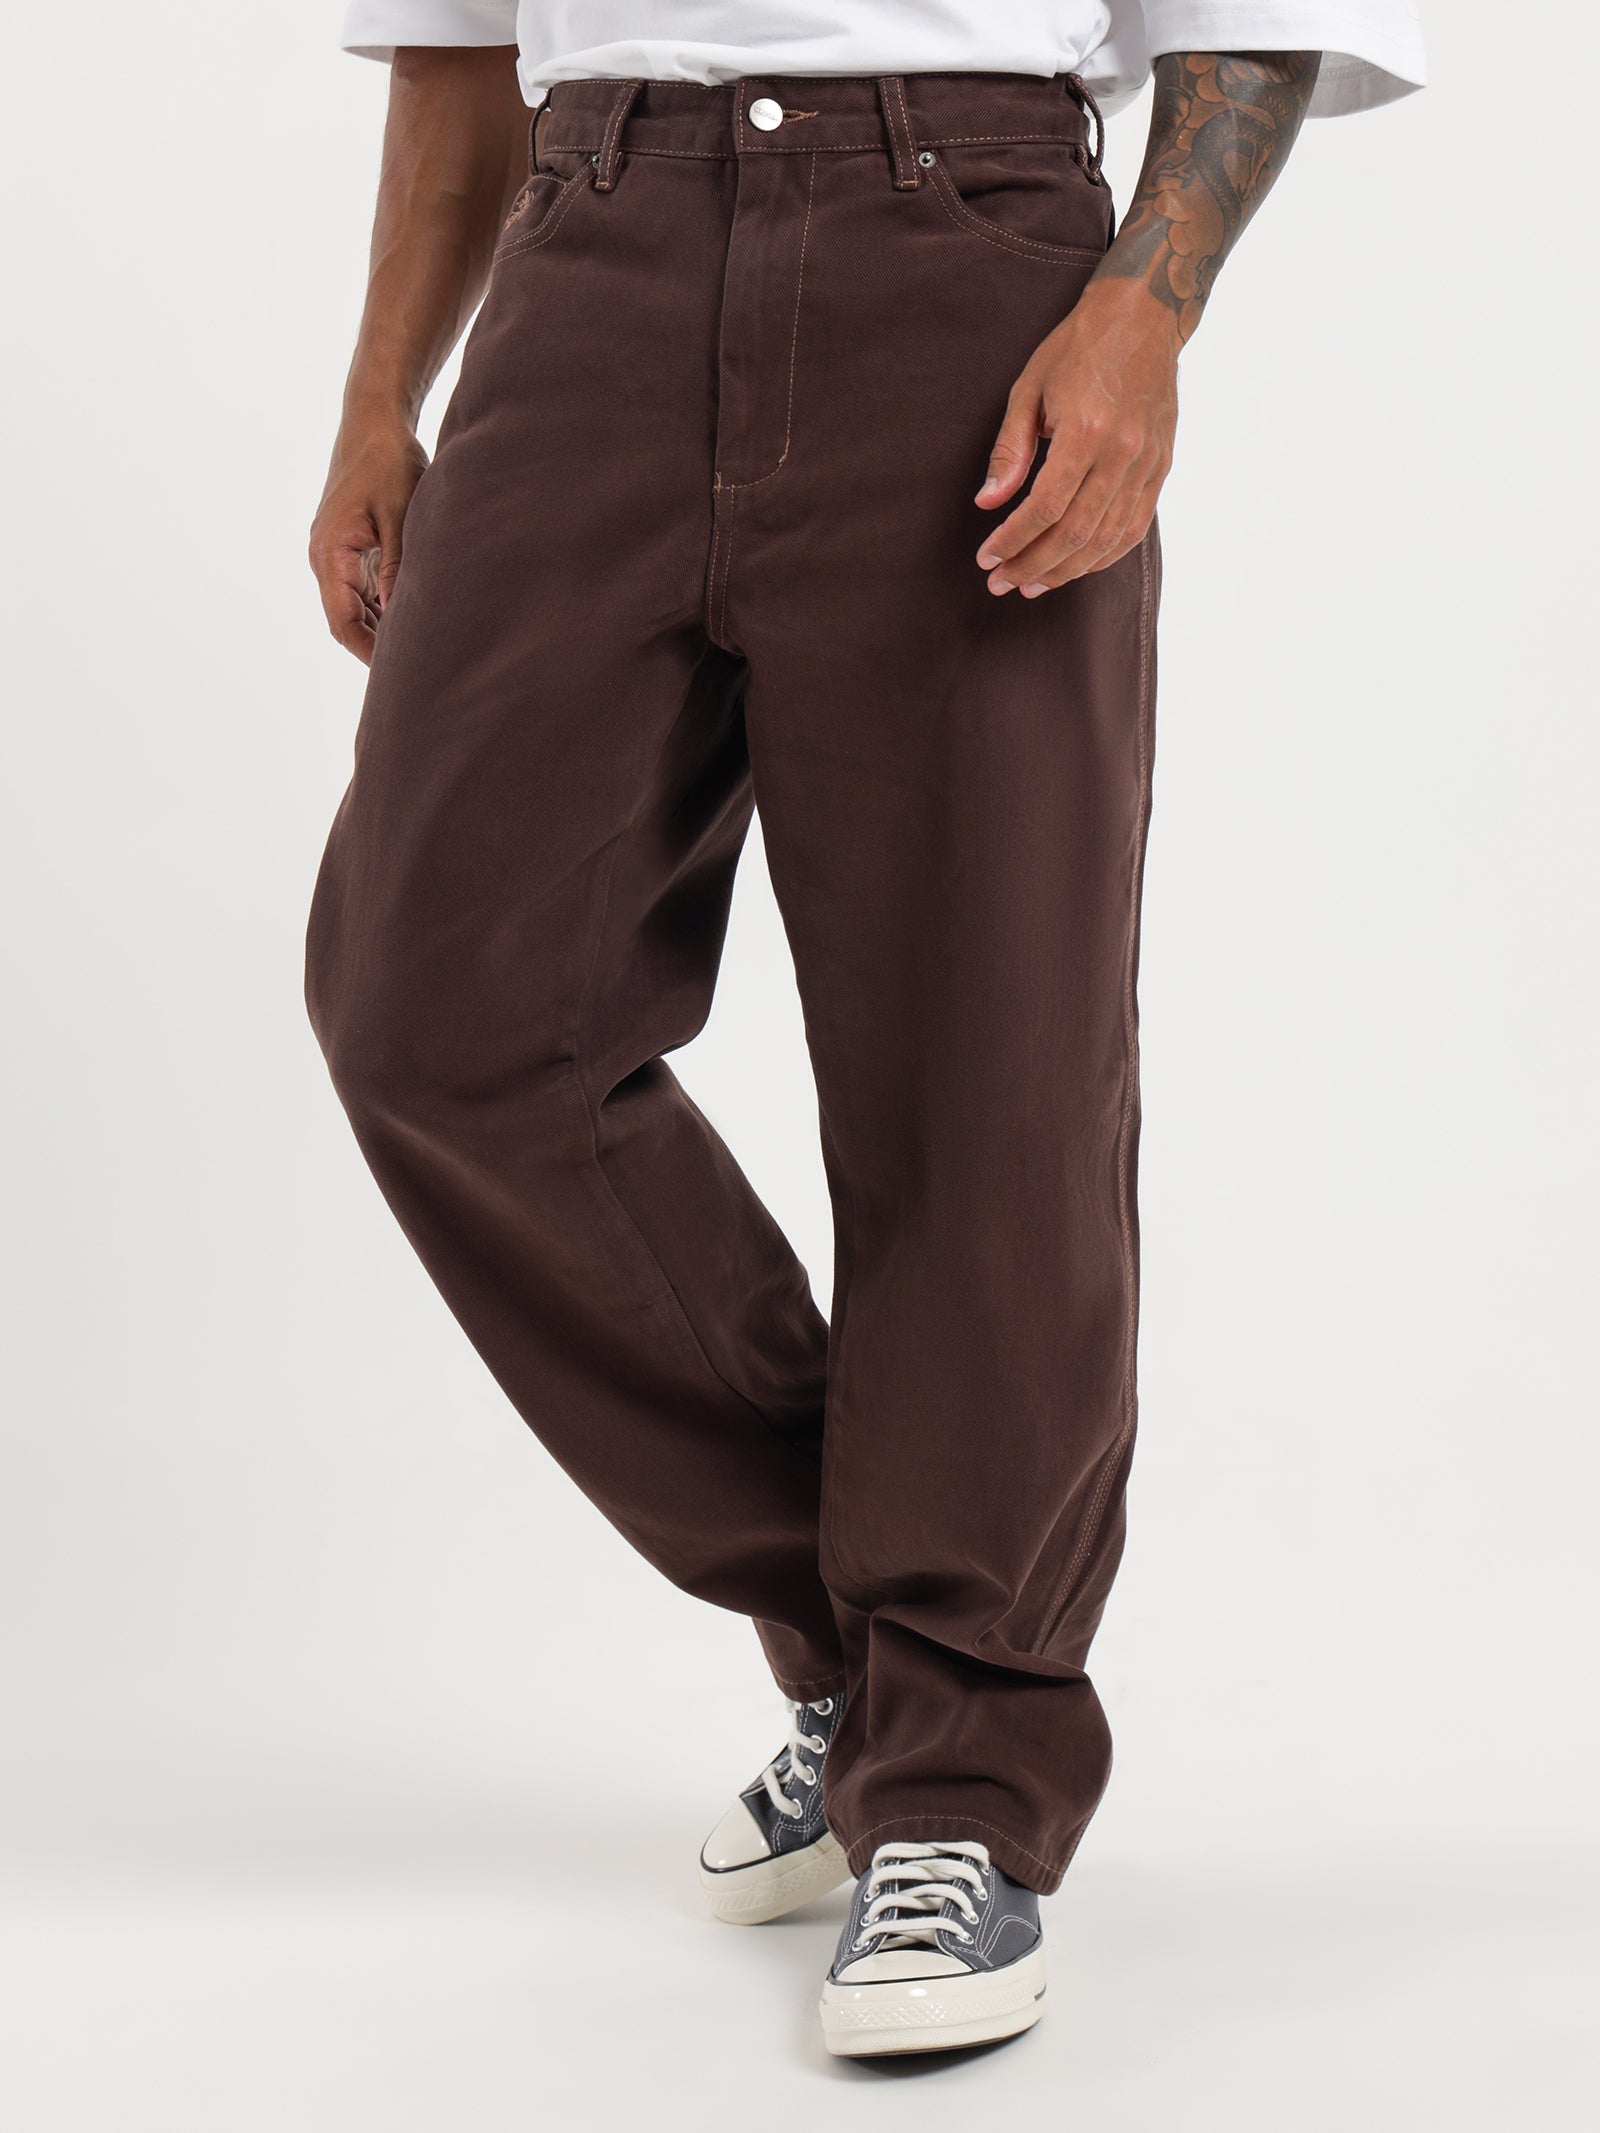 Buy Men's Green Straight Fit Carpenter Pants Online at Bewakoof